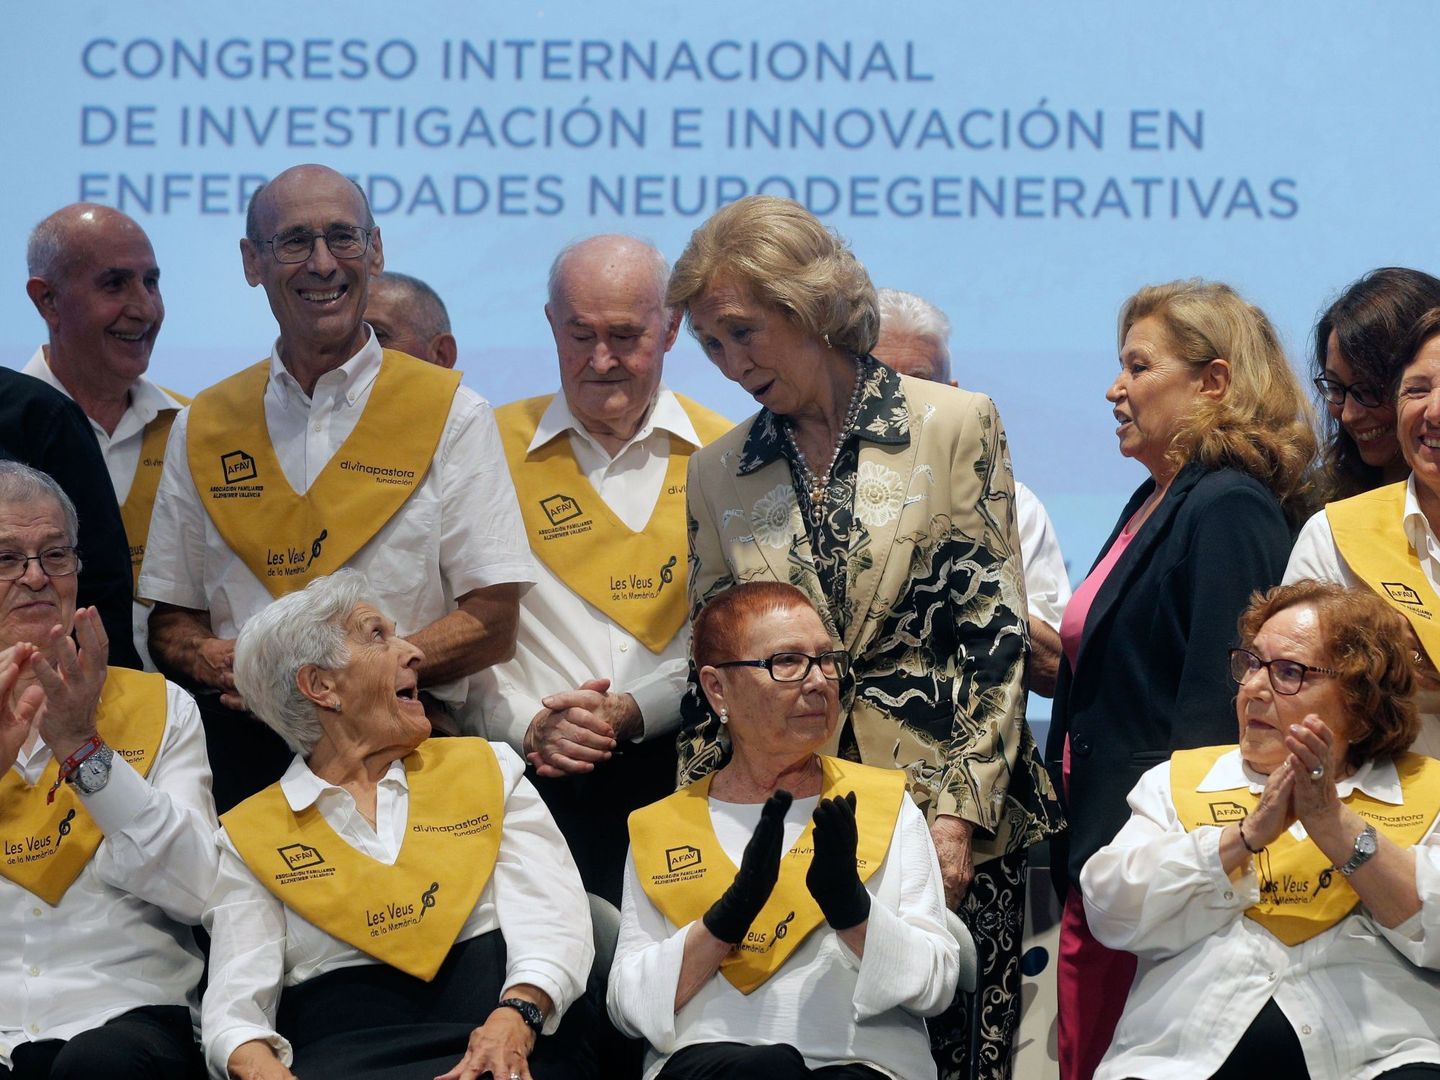 La reina Sofía ha insugurado el Congreso Internacional de Investigación e Innovación en Enfermedades Neurodegenerativas (EFE/Kai Försterling)